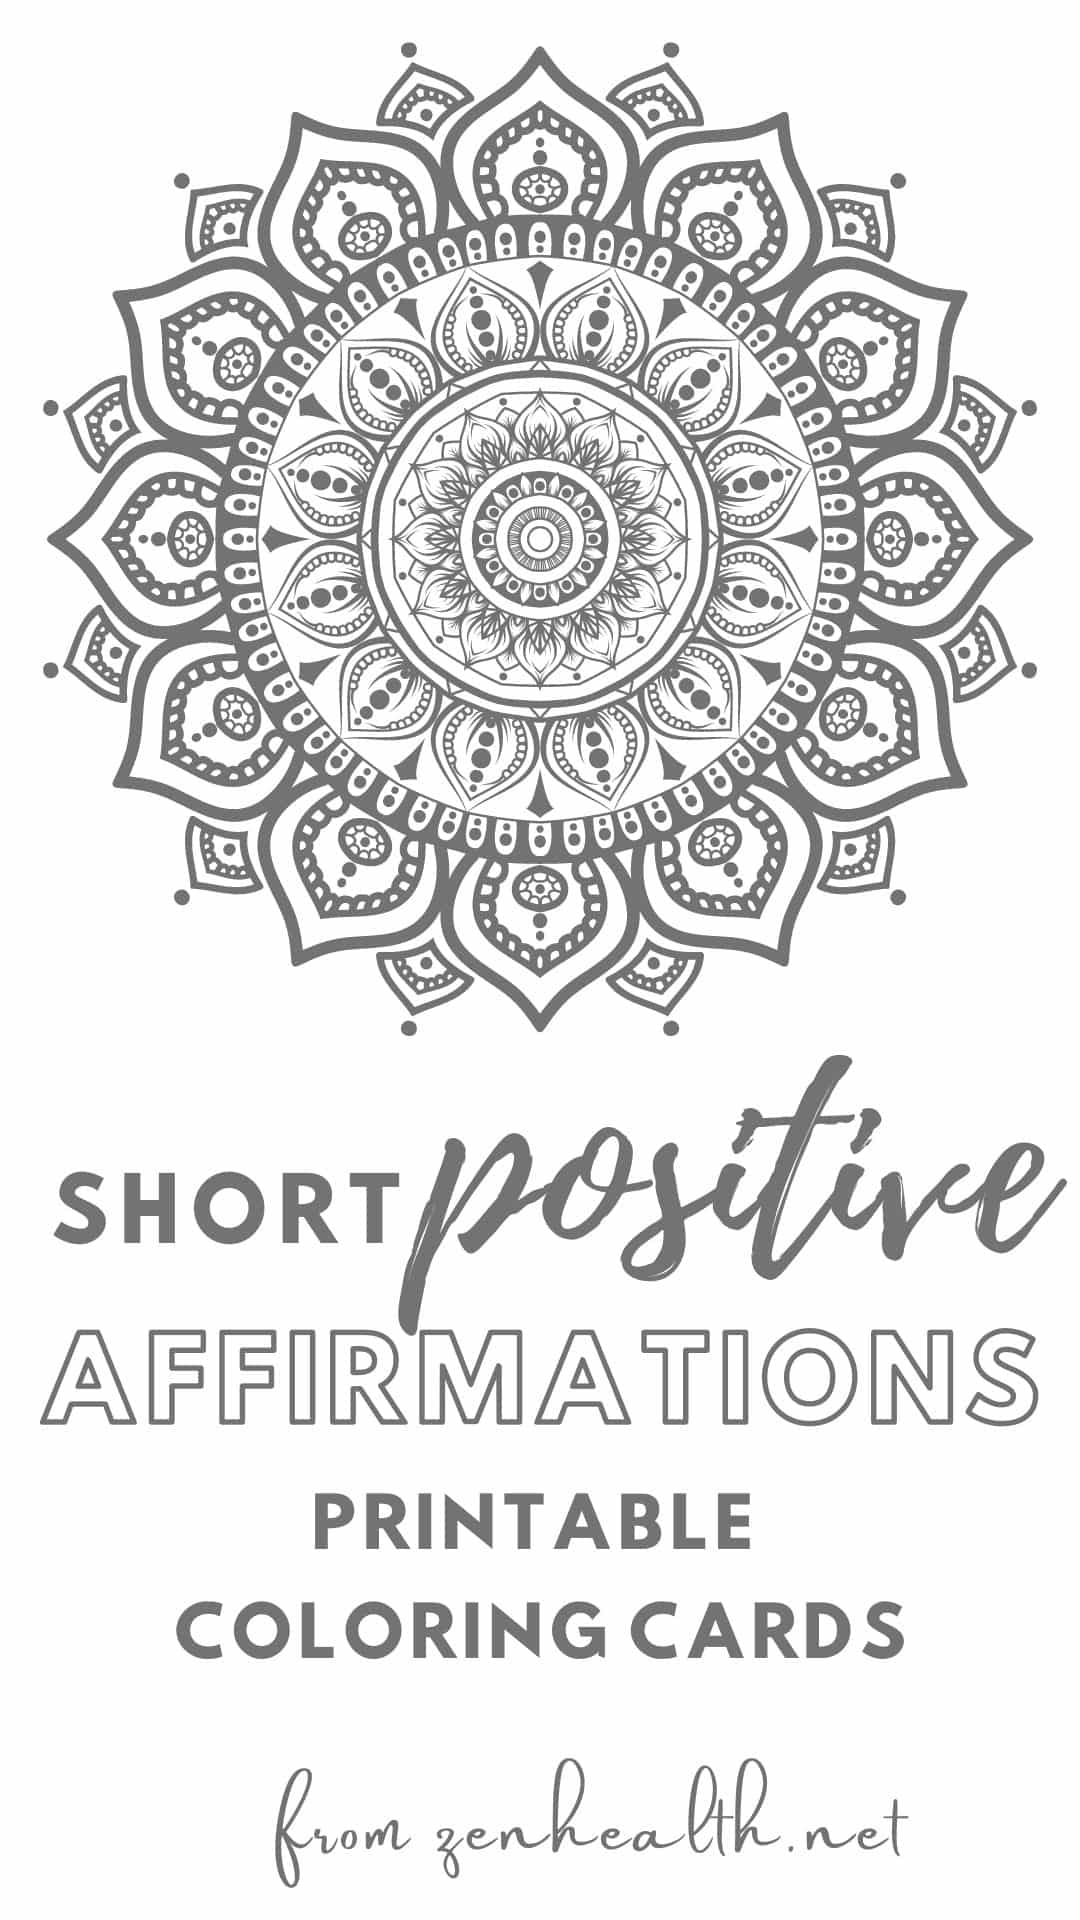 short positive affirmations printables on gumroad